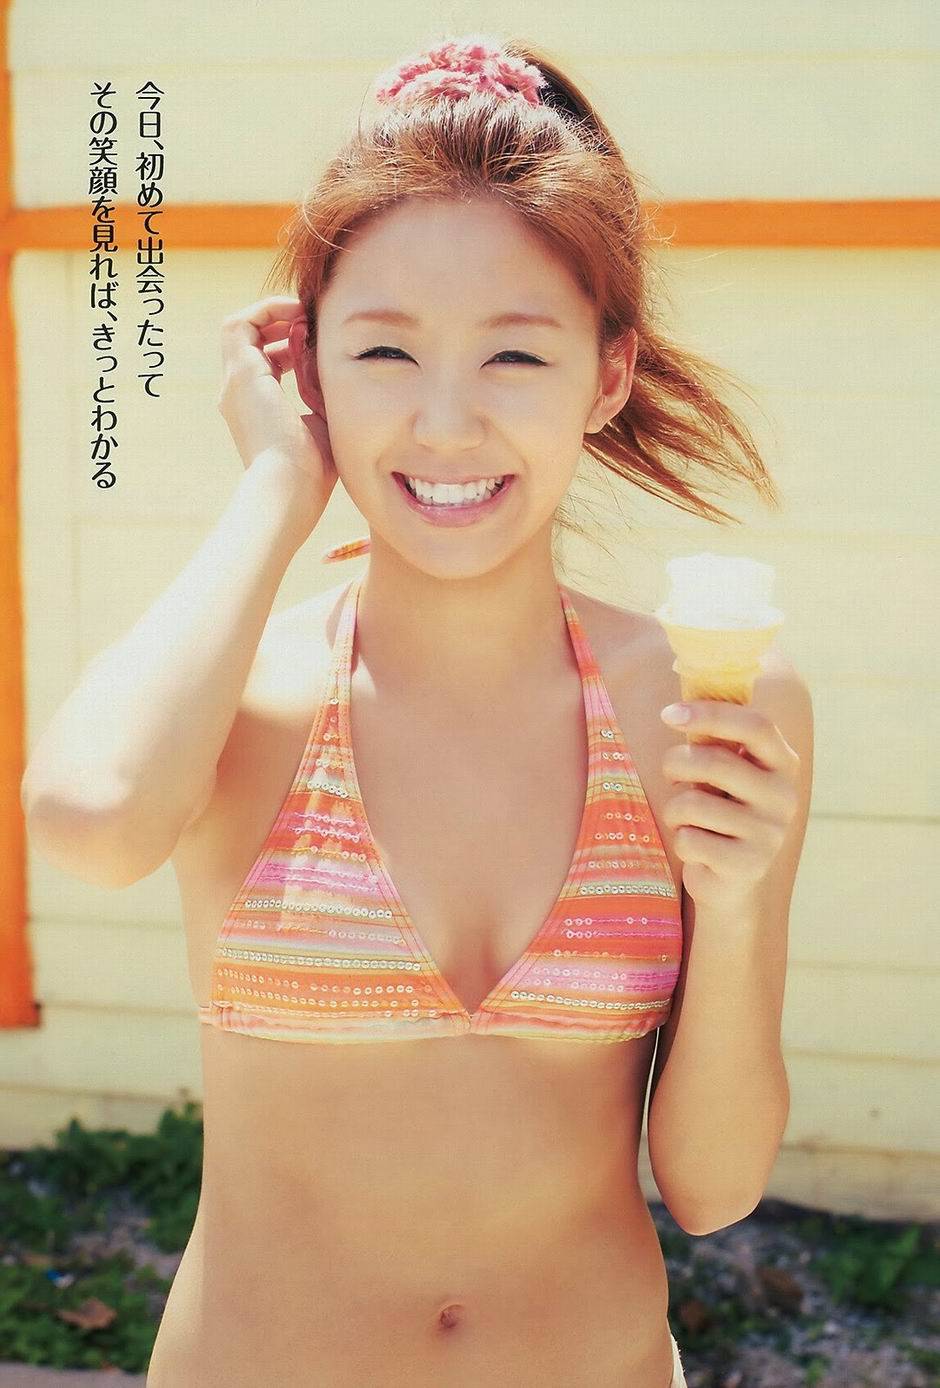 日本泳装美女模特澤山璃奈写真集